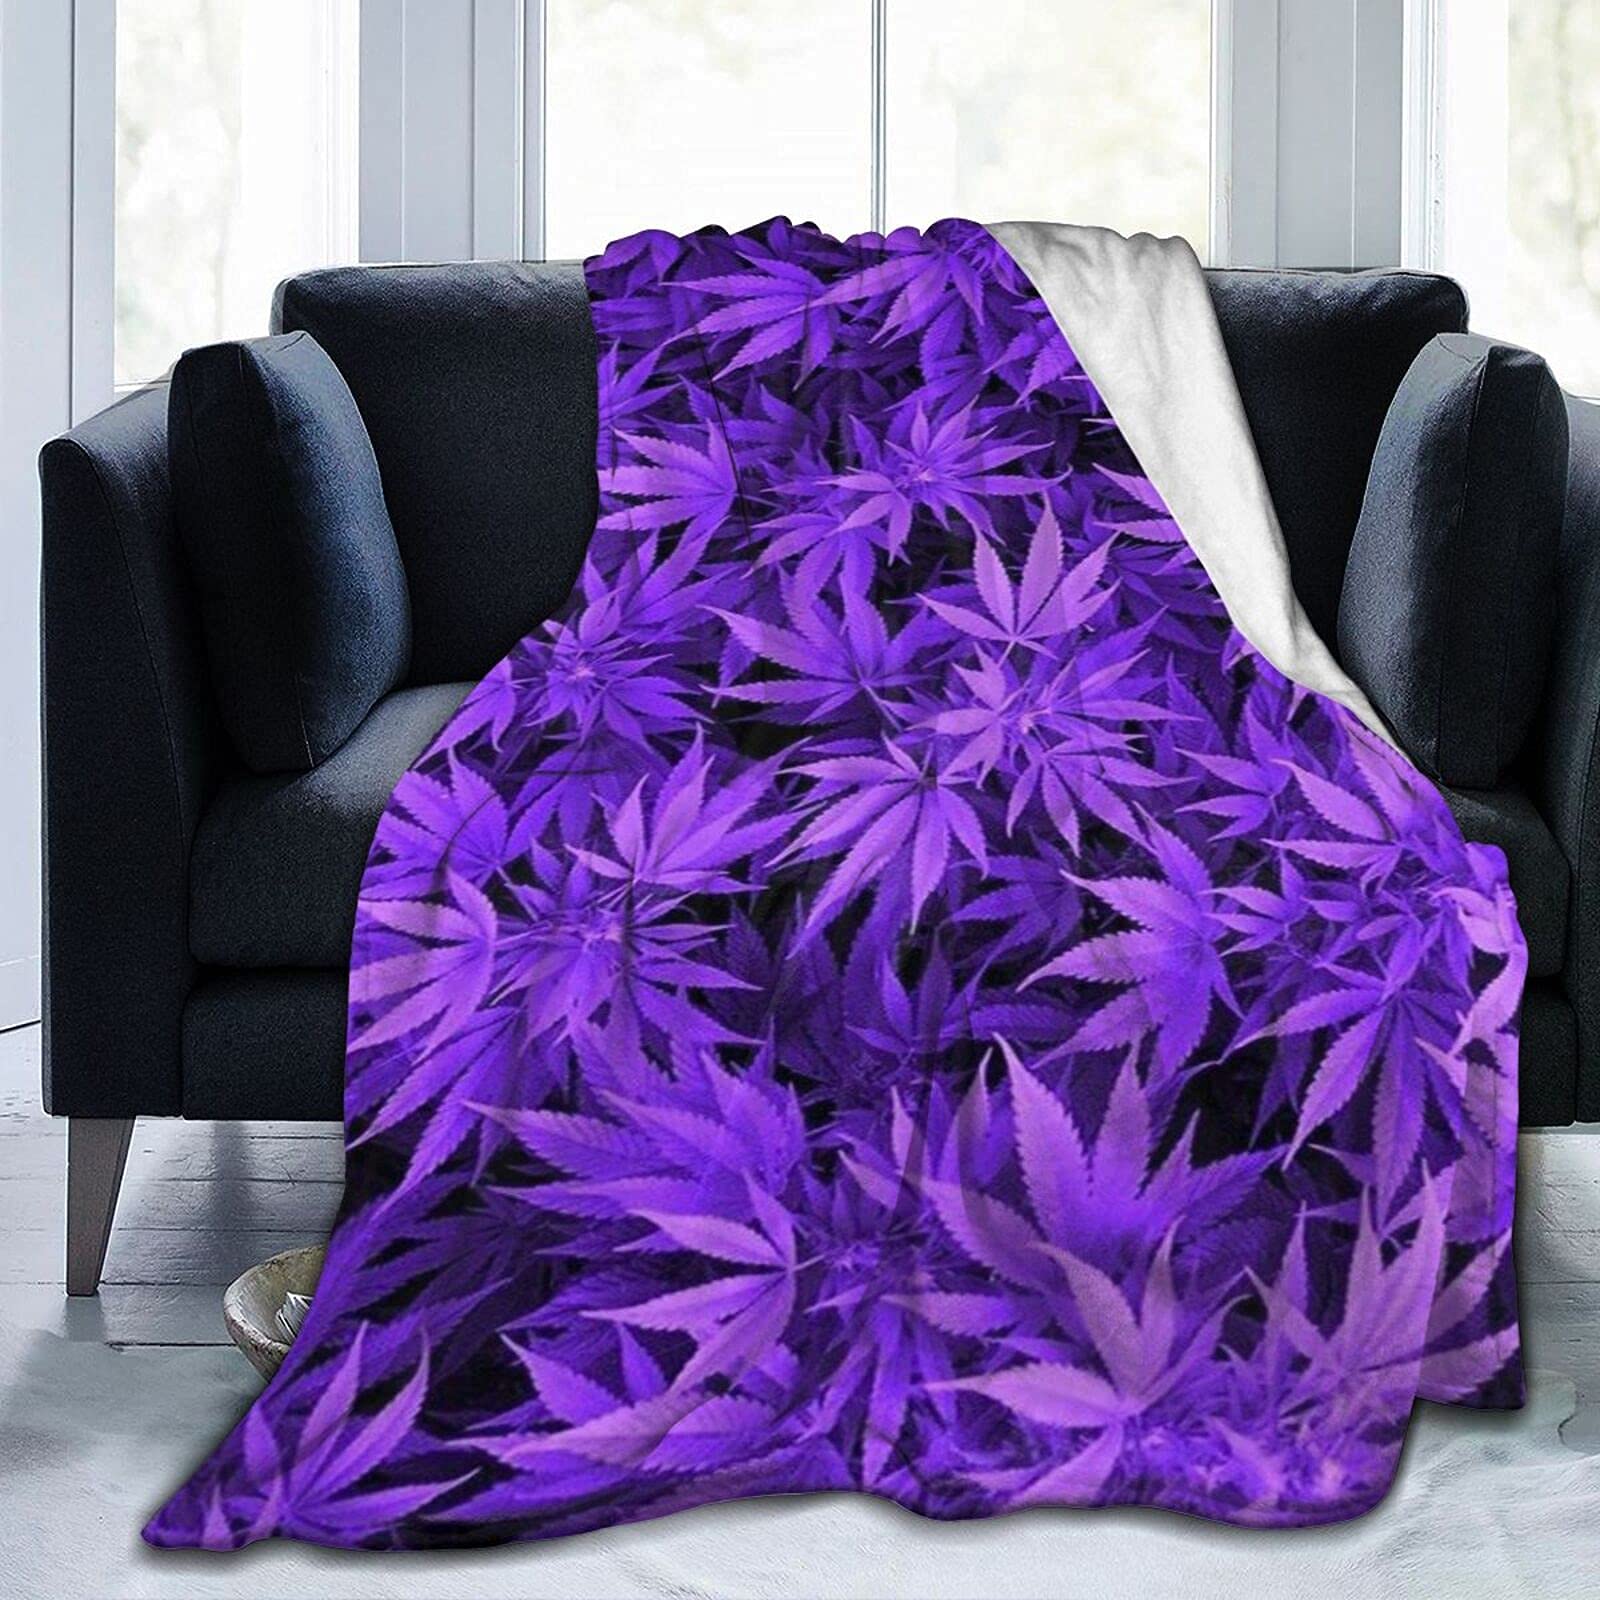 Gambo Lila Weed Flanell Fleece Überwurf Decken für Bett Sofa Zimmer Zuhause Weiche Decke Warm Ganzjahresüberwurf Plüschdecke 203,2 x 152,4 cm